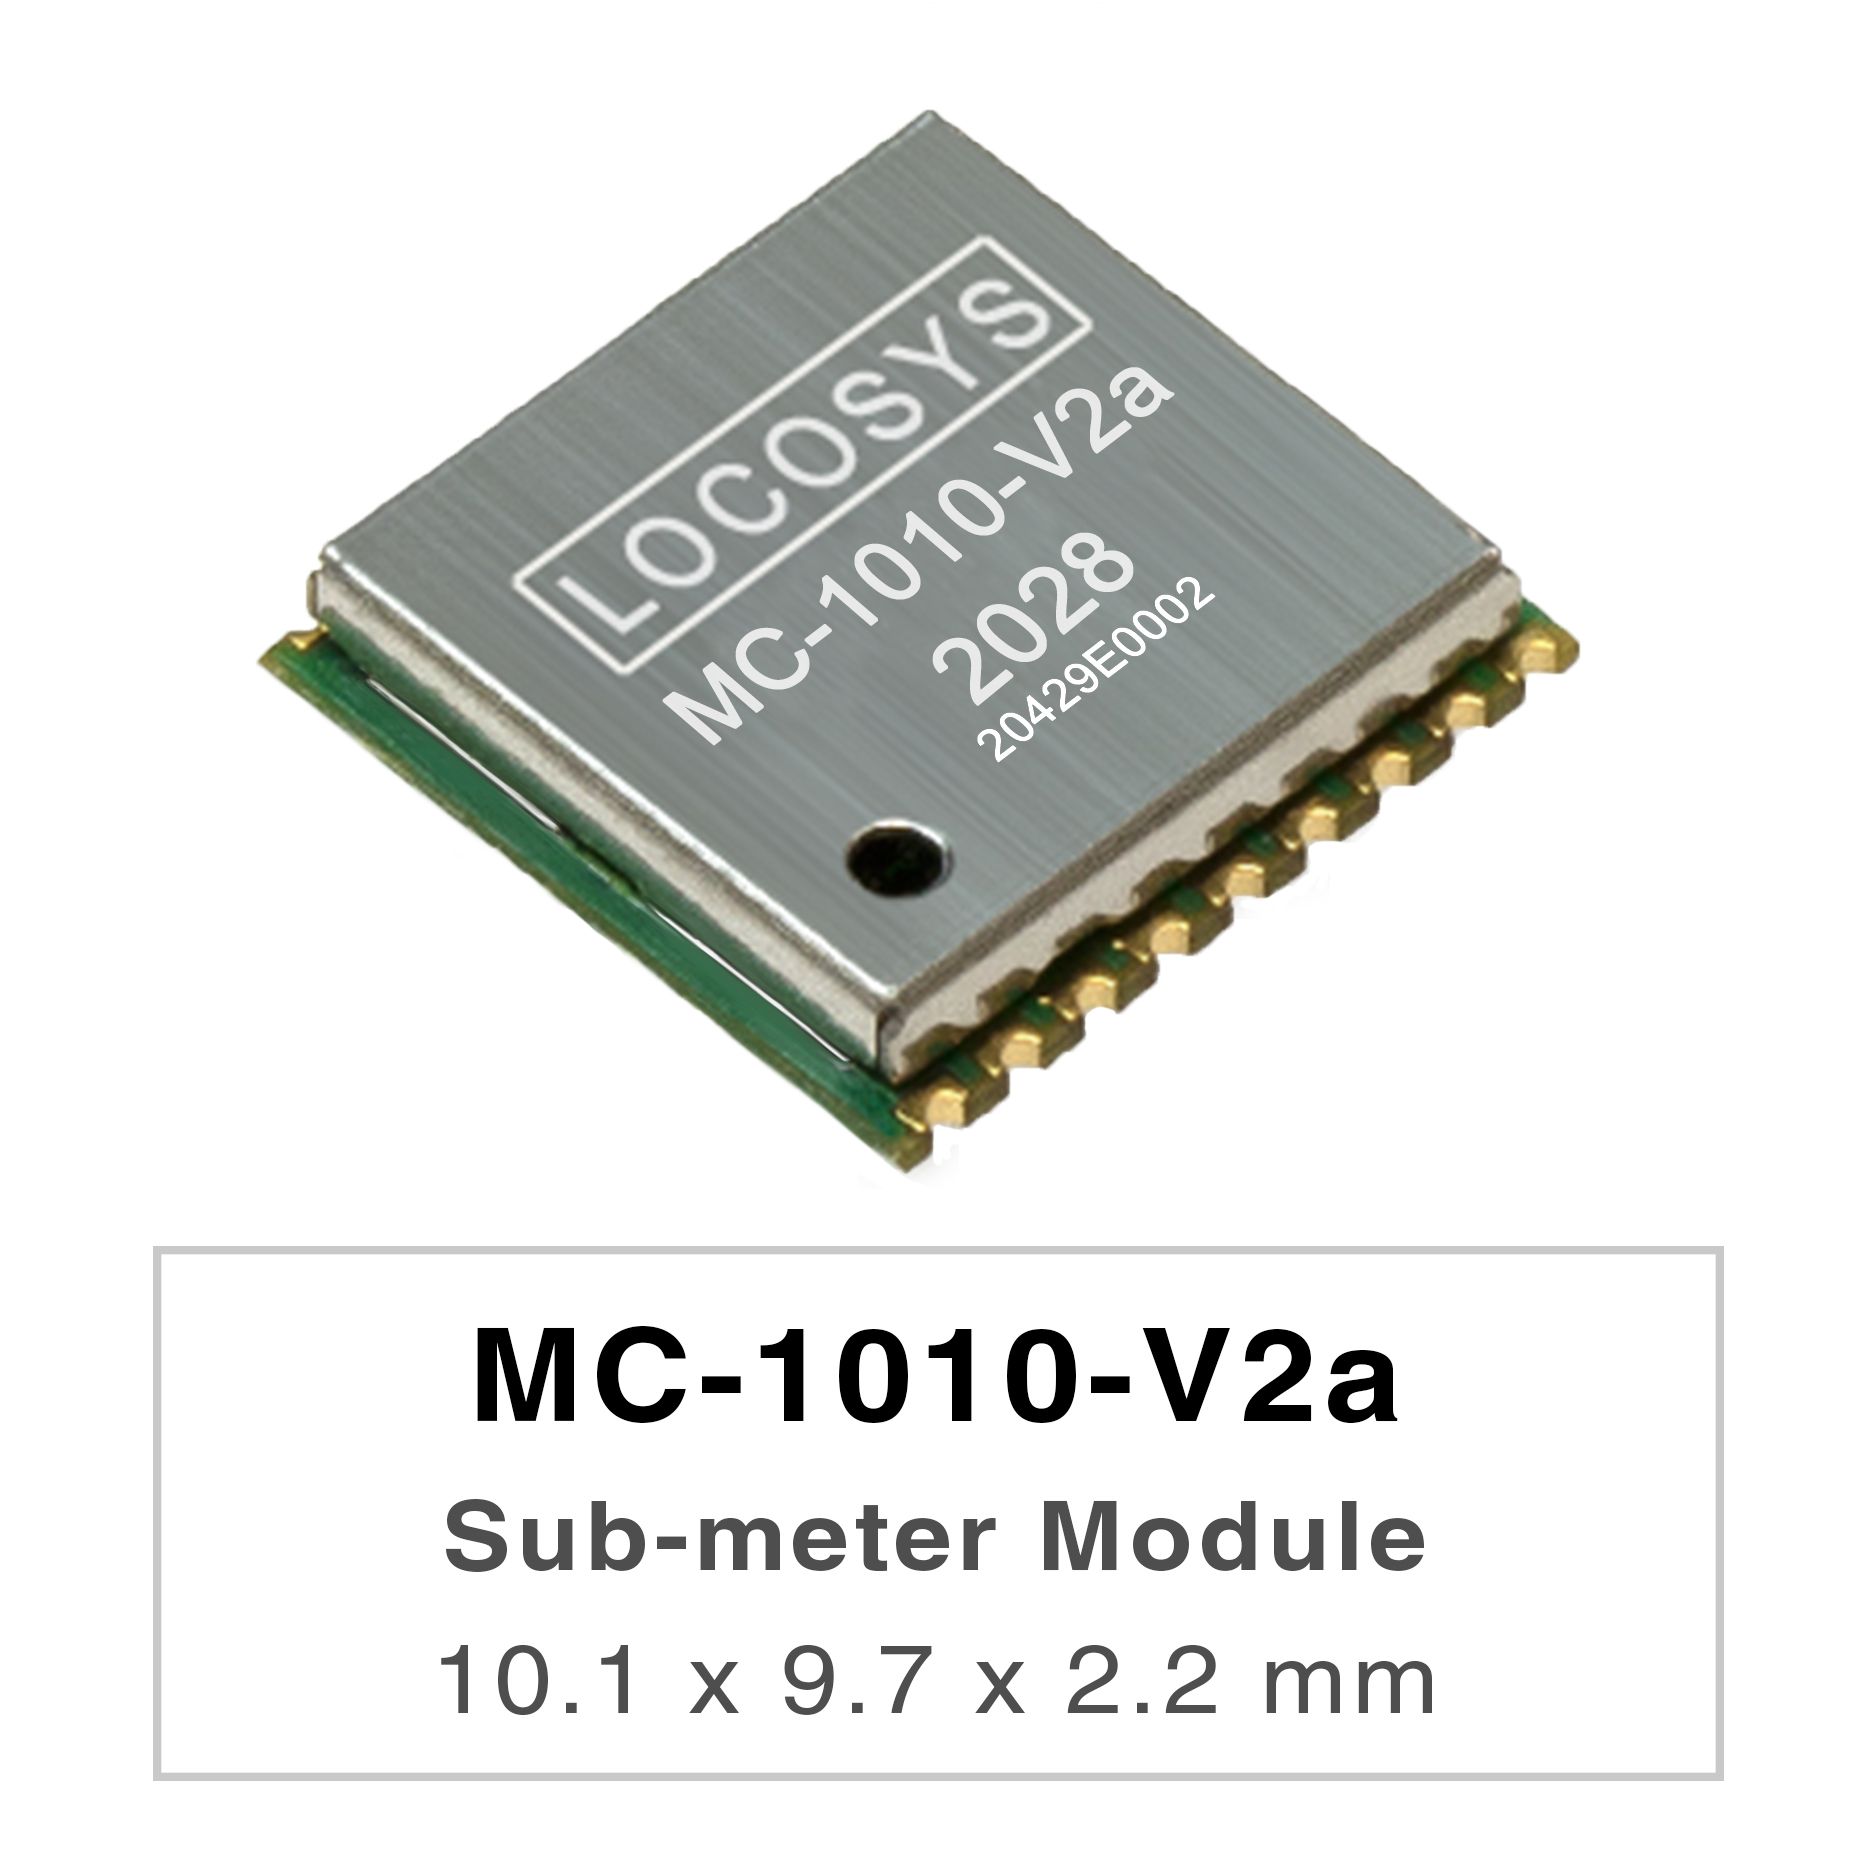 Серия LOCOSYS MC-1010-Vxx представляет собой высокопроизводительные двухдиапазонные модули позиционирования GNSS,
     <br />способные отслеживать все глобальные системы гражданской навигации. Они используют 12-нм процесс и интегрируют эффективную
     <br />архитектуру управления питанием для обеспечения низкого энергопотребления и высокой чувствительности.